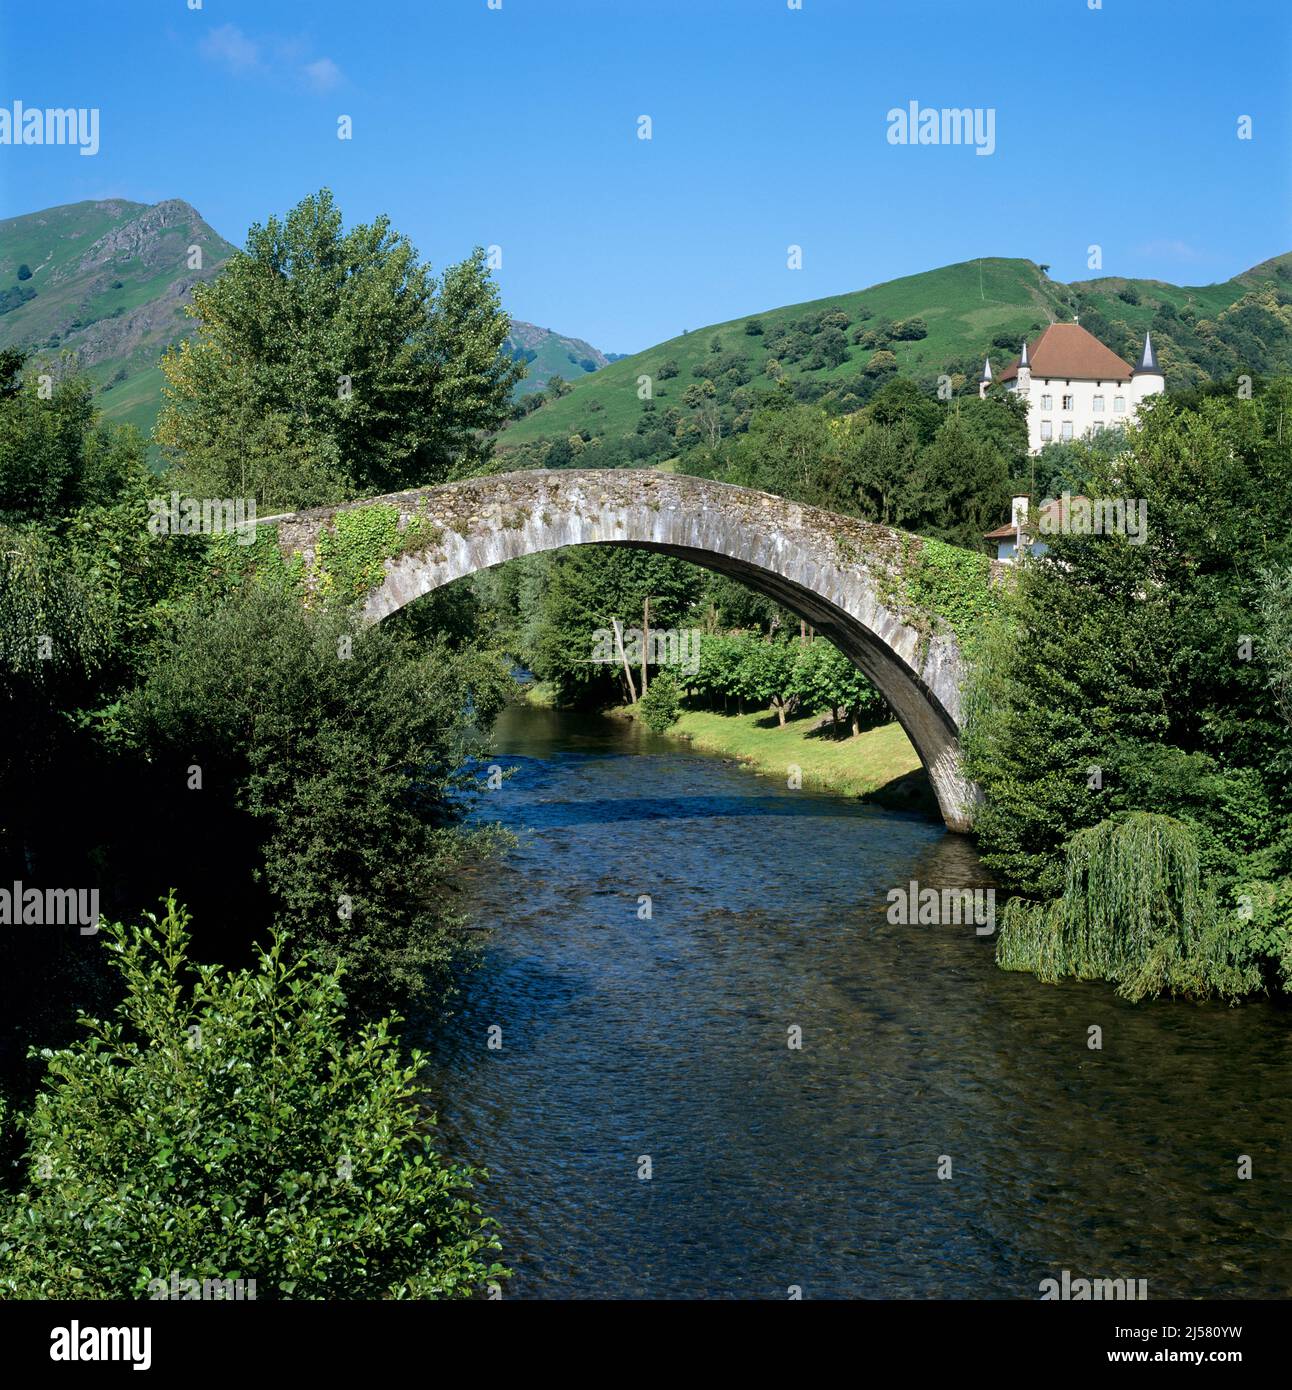 The Roman bridge, Saint Etienne de Baigorry, Nouvelle Aquitaine, Basque country, France, Europe Stock Photo